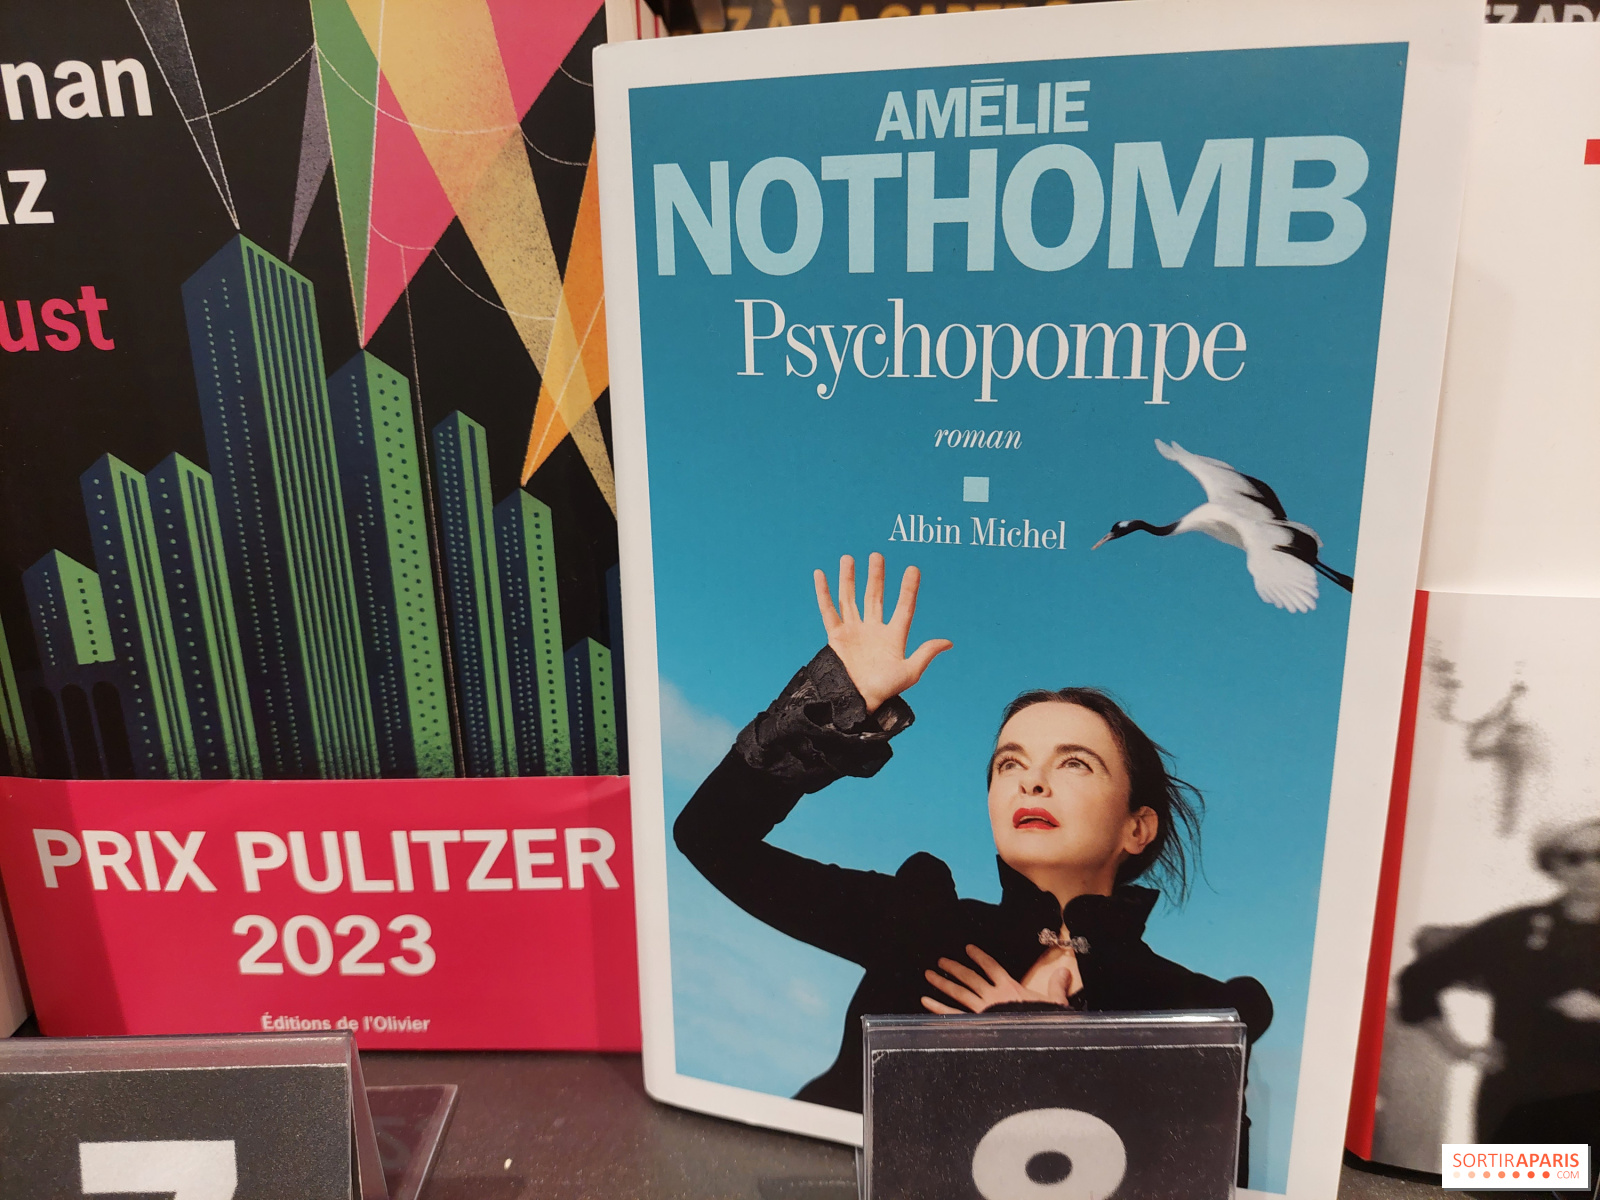 Les 10 meilleurs livres de Amélie Nothomb